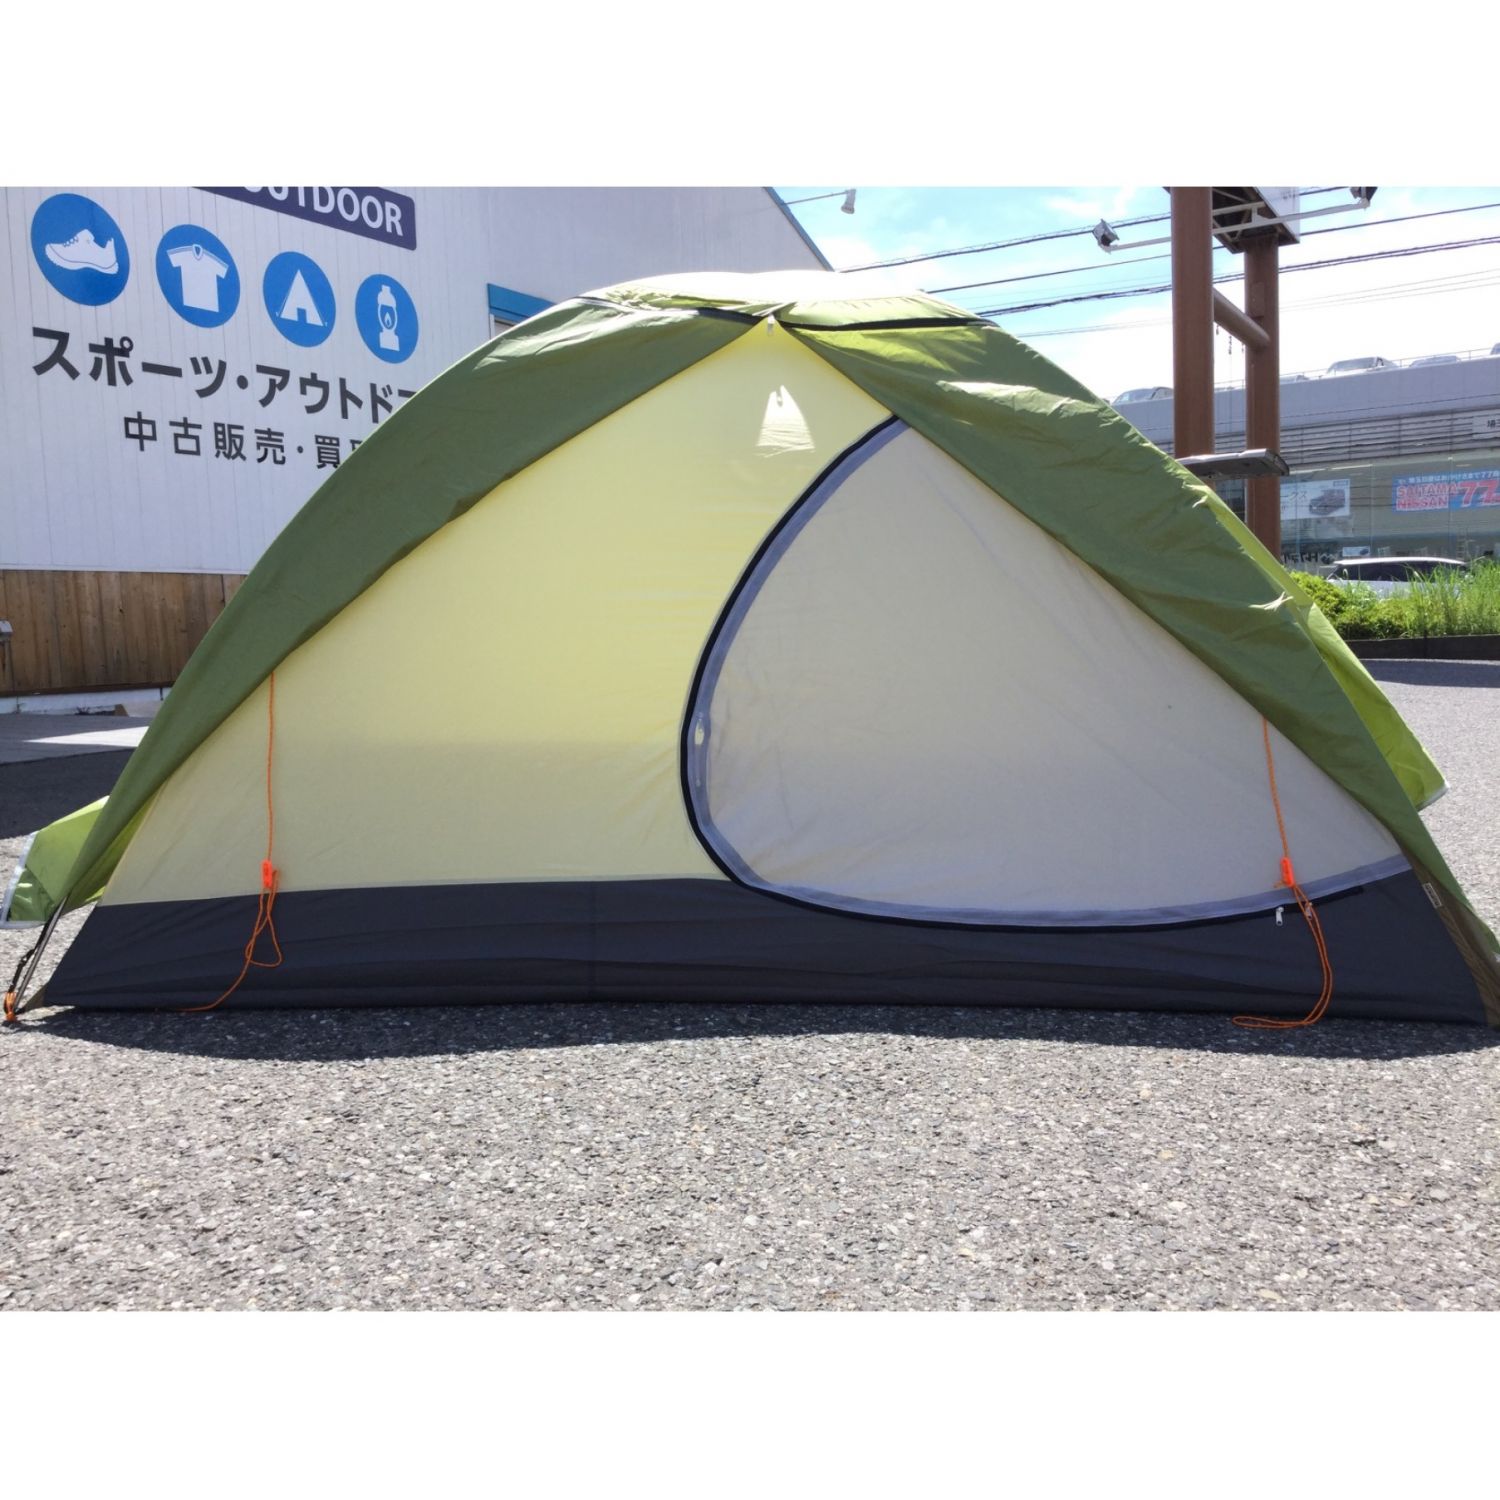 ☆アライテント RIPENトレックライズ2山岳テント - テント/タープ